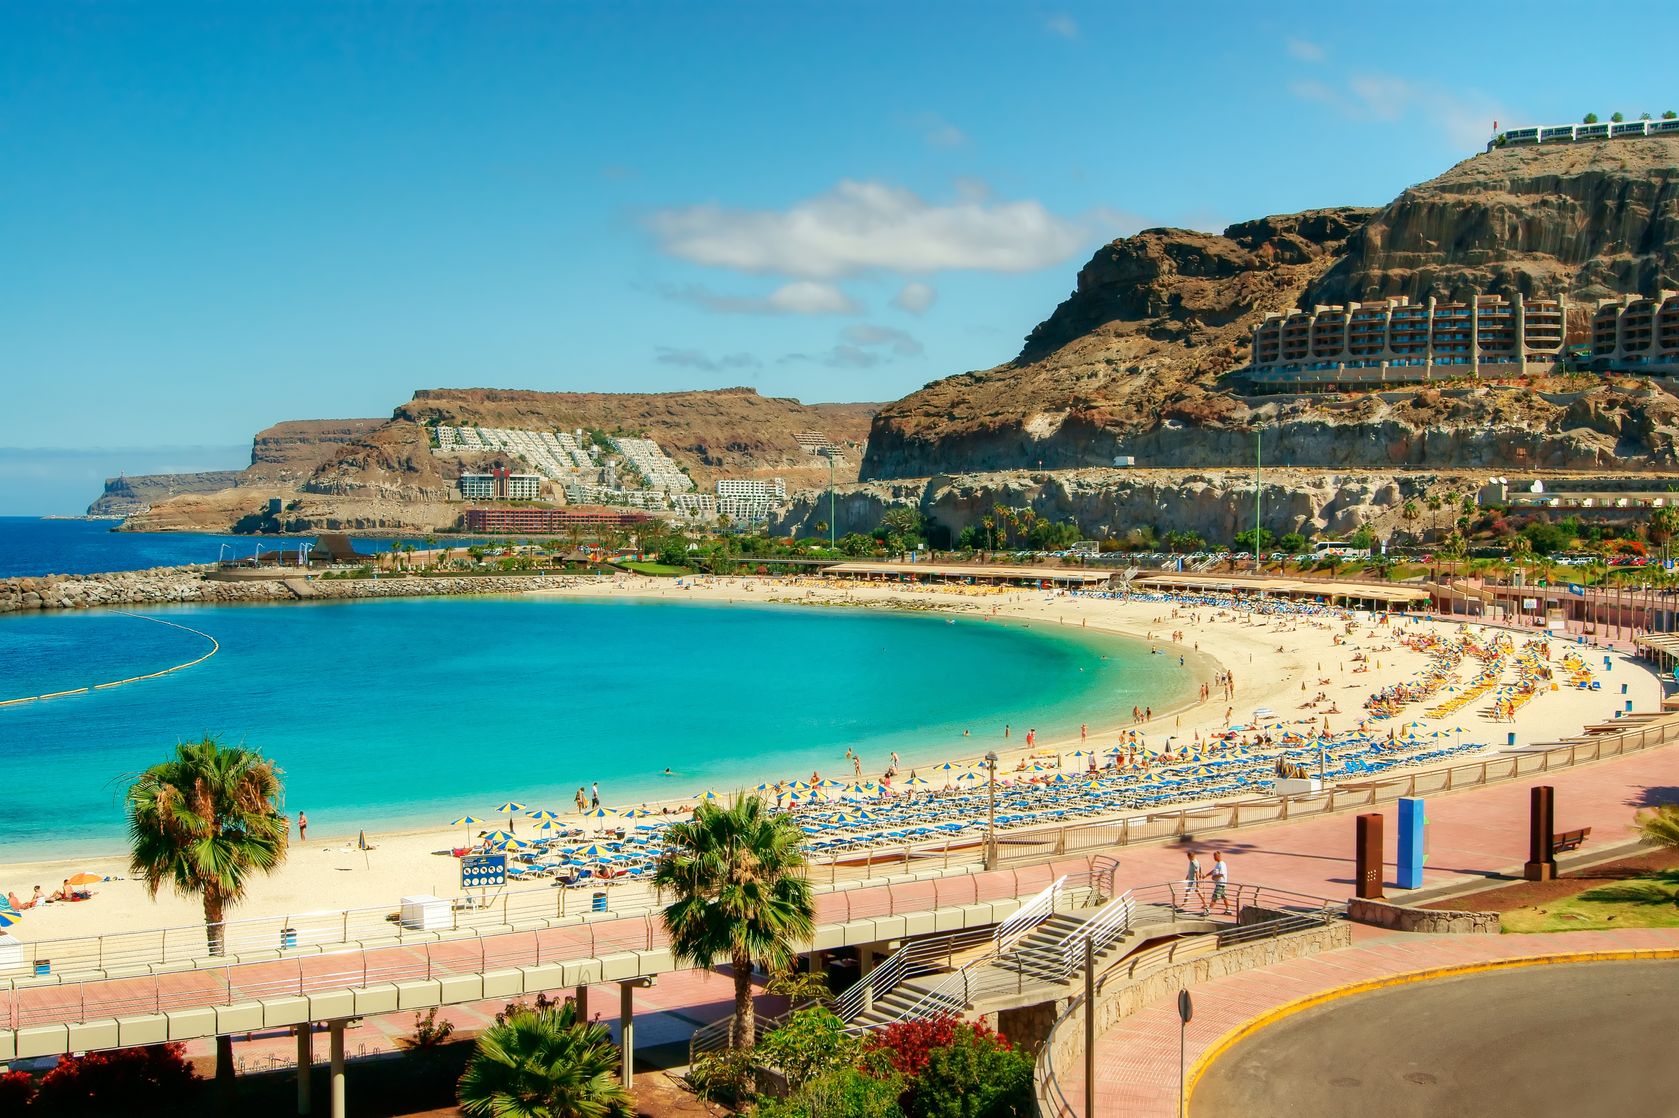 Az IBUSZ szervezésében Gran Canaria vidékén a nyaralni vágyók a kristálytiszta strandok mellett számos élményt gyűjthetnek az óváros ódon utcáit felfedezve.